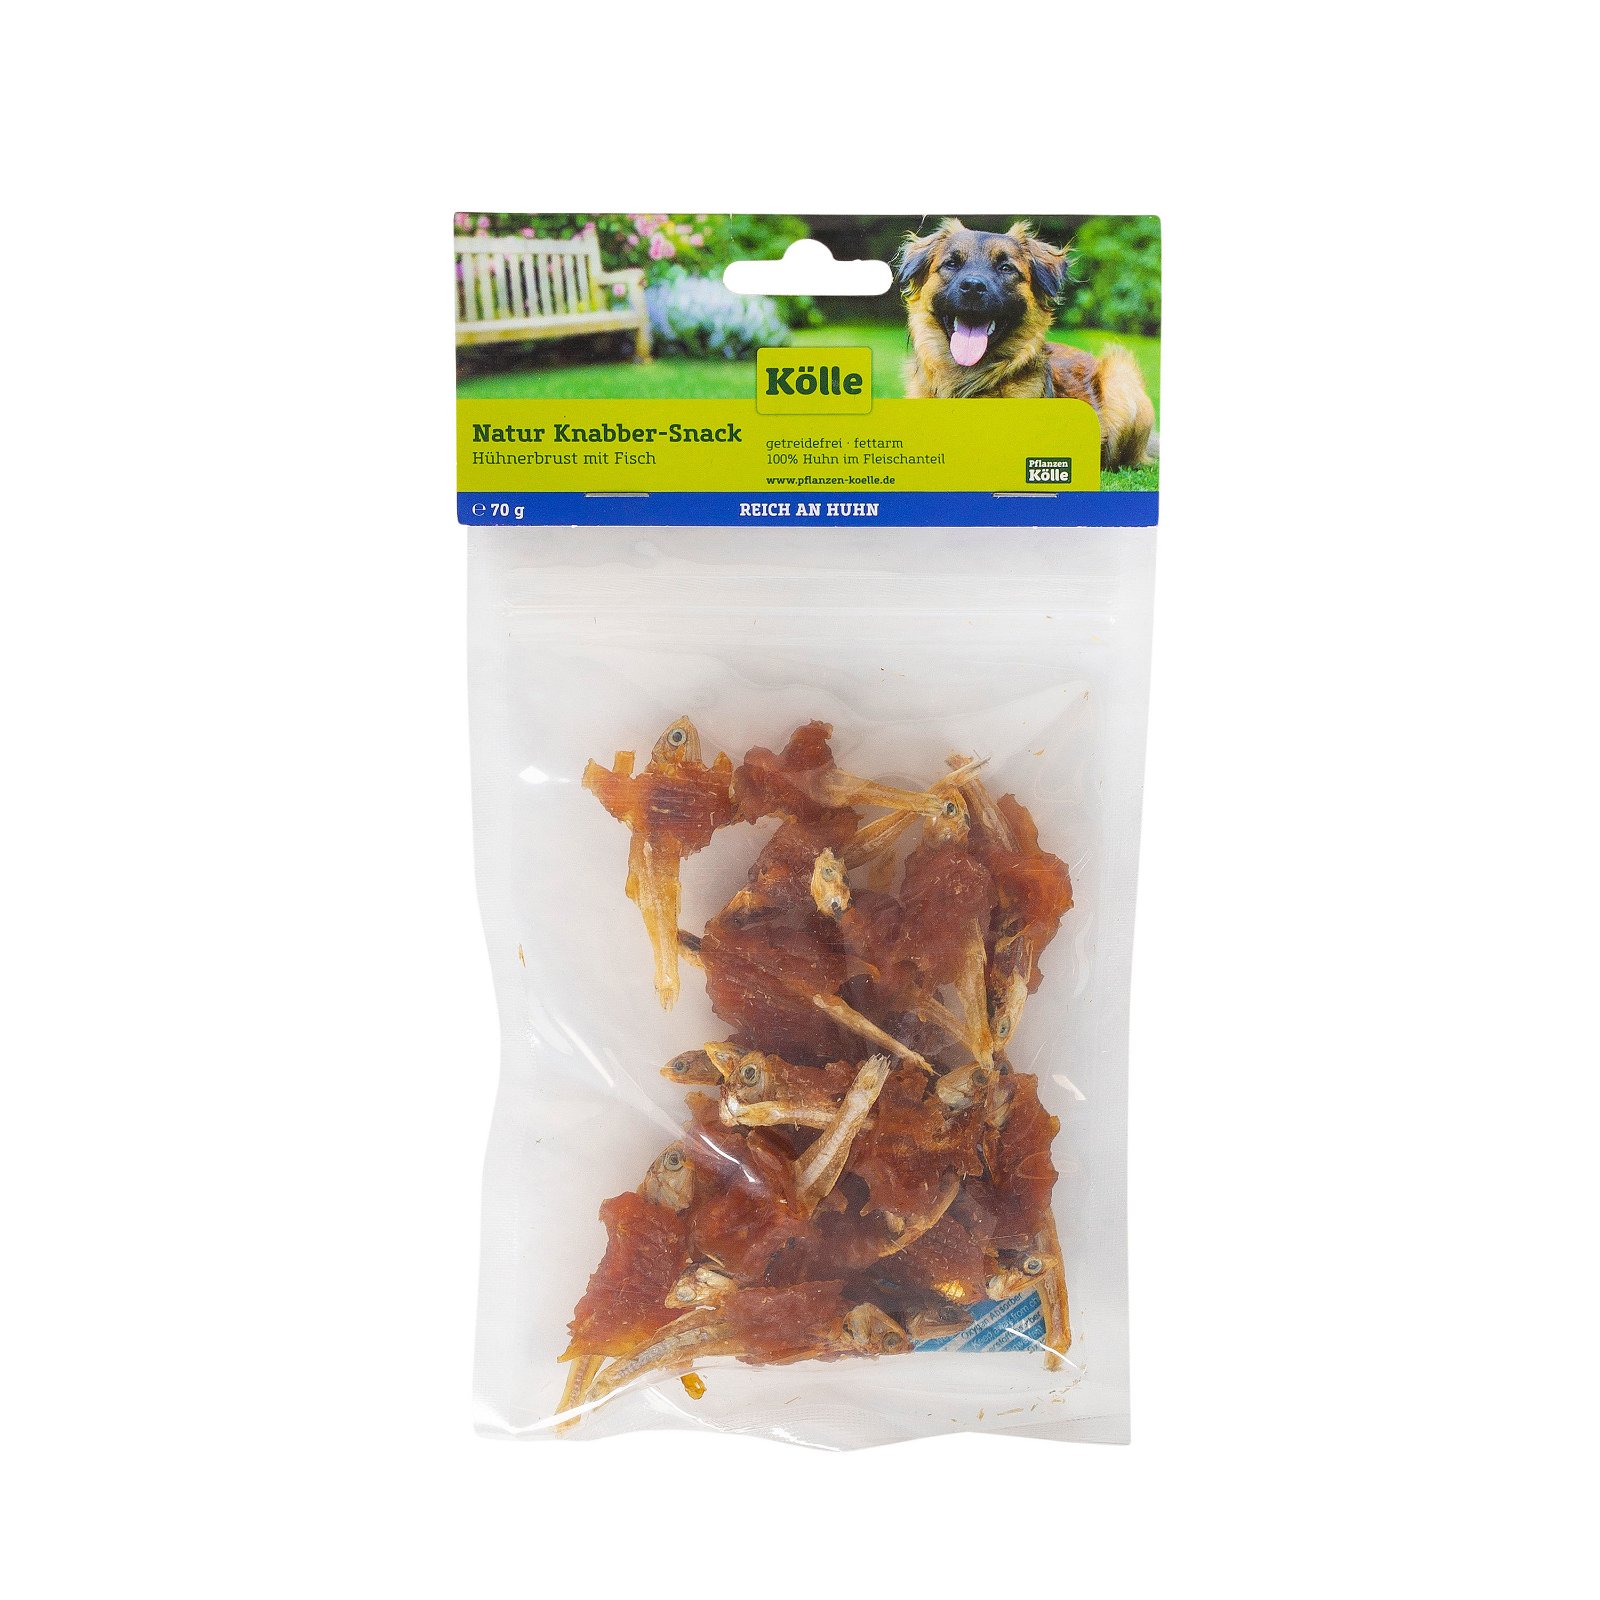 Kölle Natur Knabber-Snack für Hunde, Hühnerbrust & Fisch in Streifen, 70 g